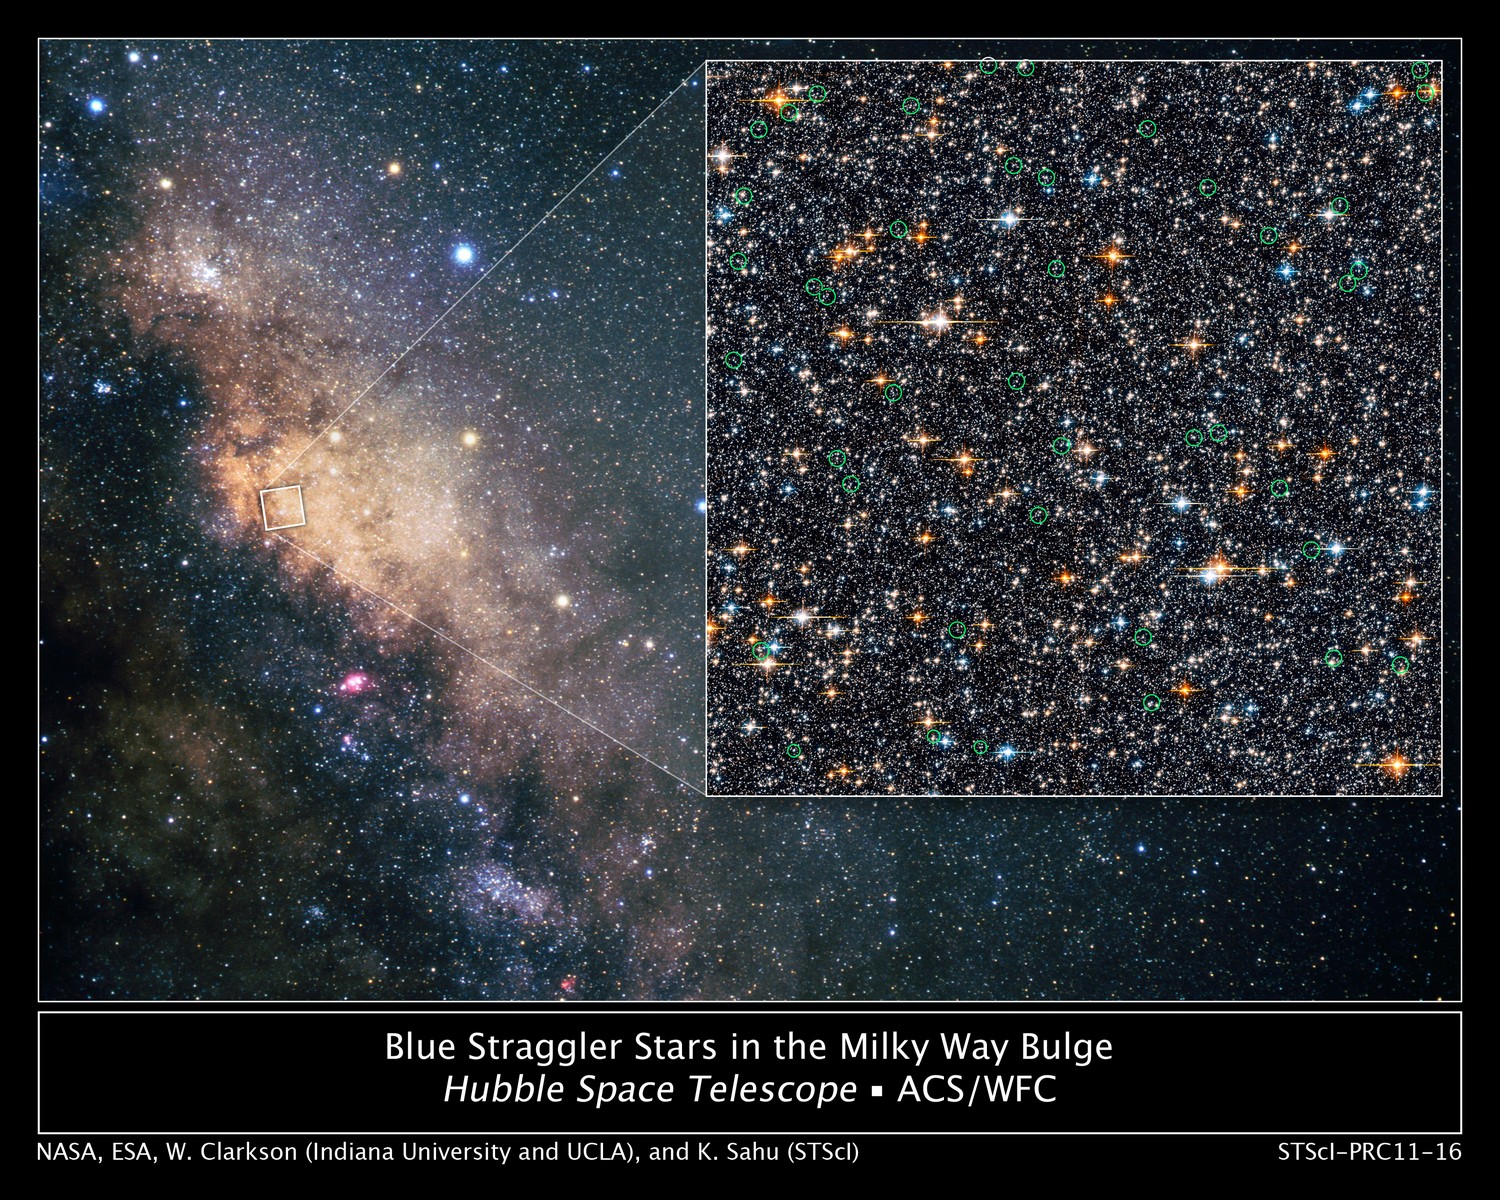 Une quarantaine d'étoiles anormalement jeunes siègent au milieu de leurs homologues âgées au centre de la Voie lactée. © Nasa/Esa/W. Clarkson (Indiana University and UCLA)/K. Sahu (STScI)